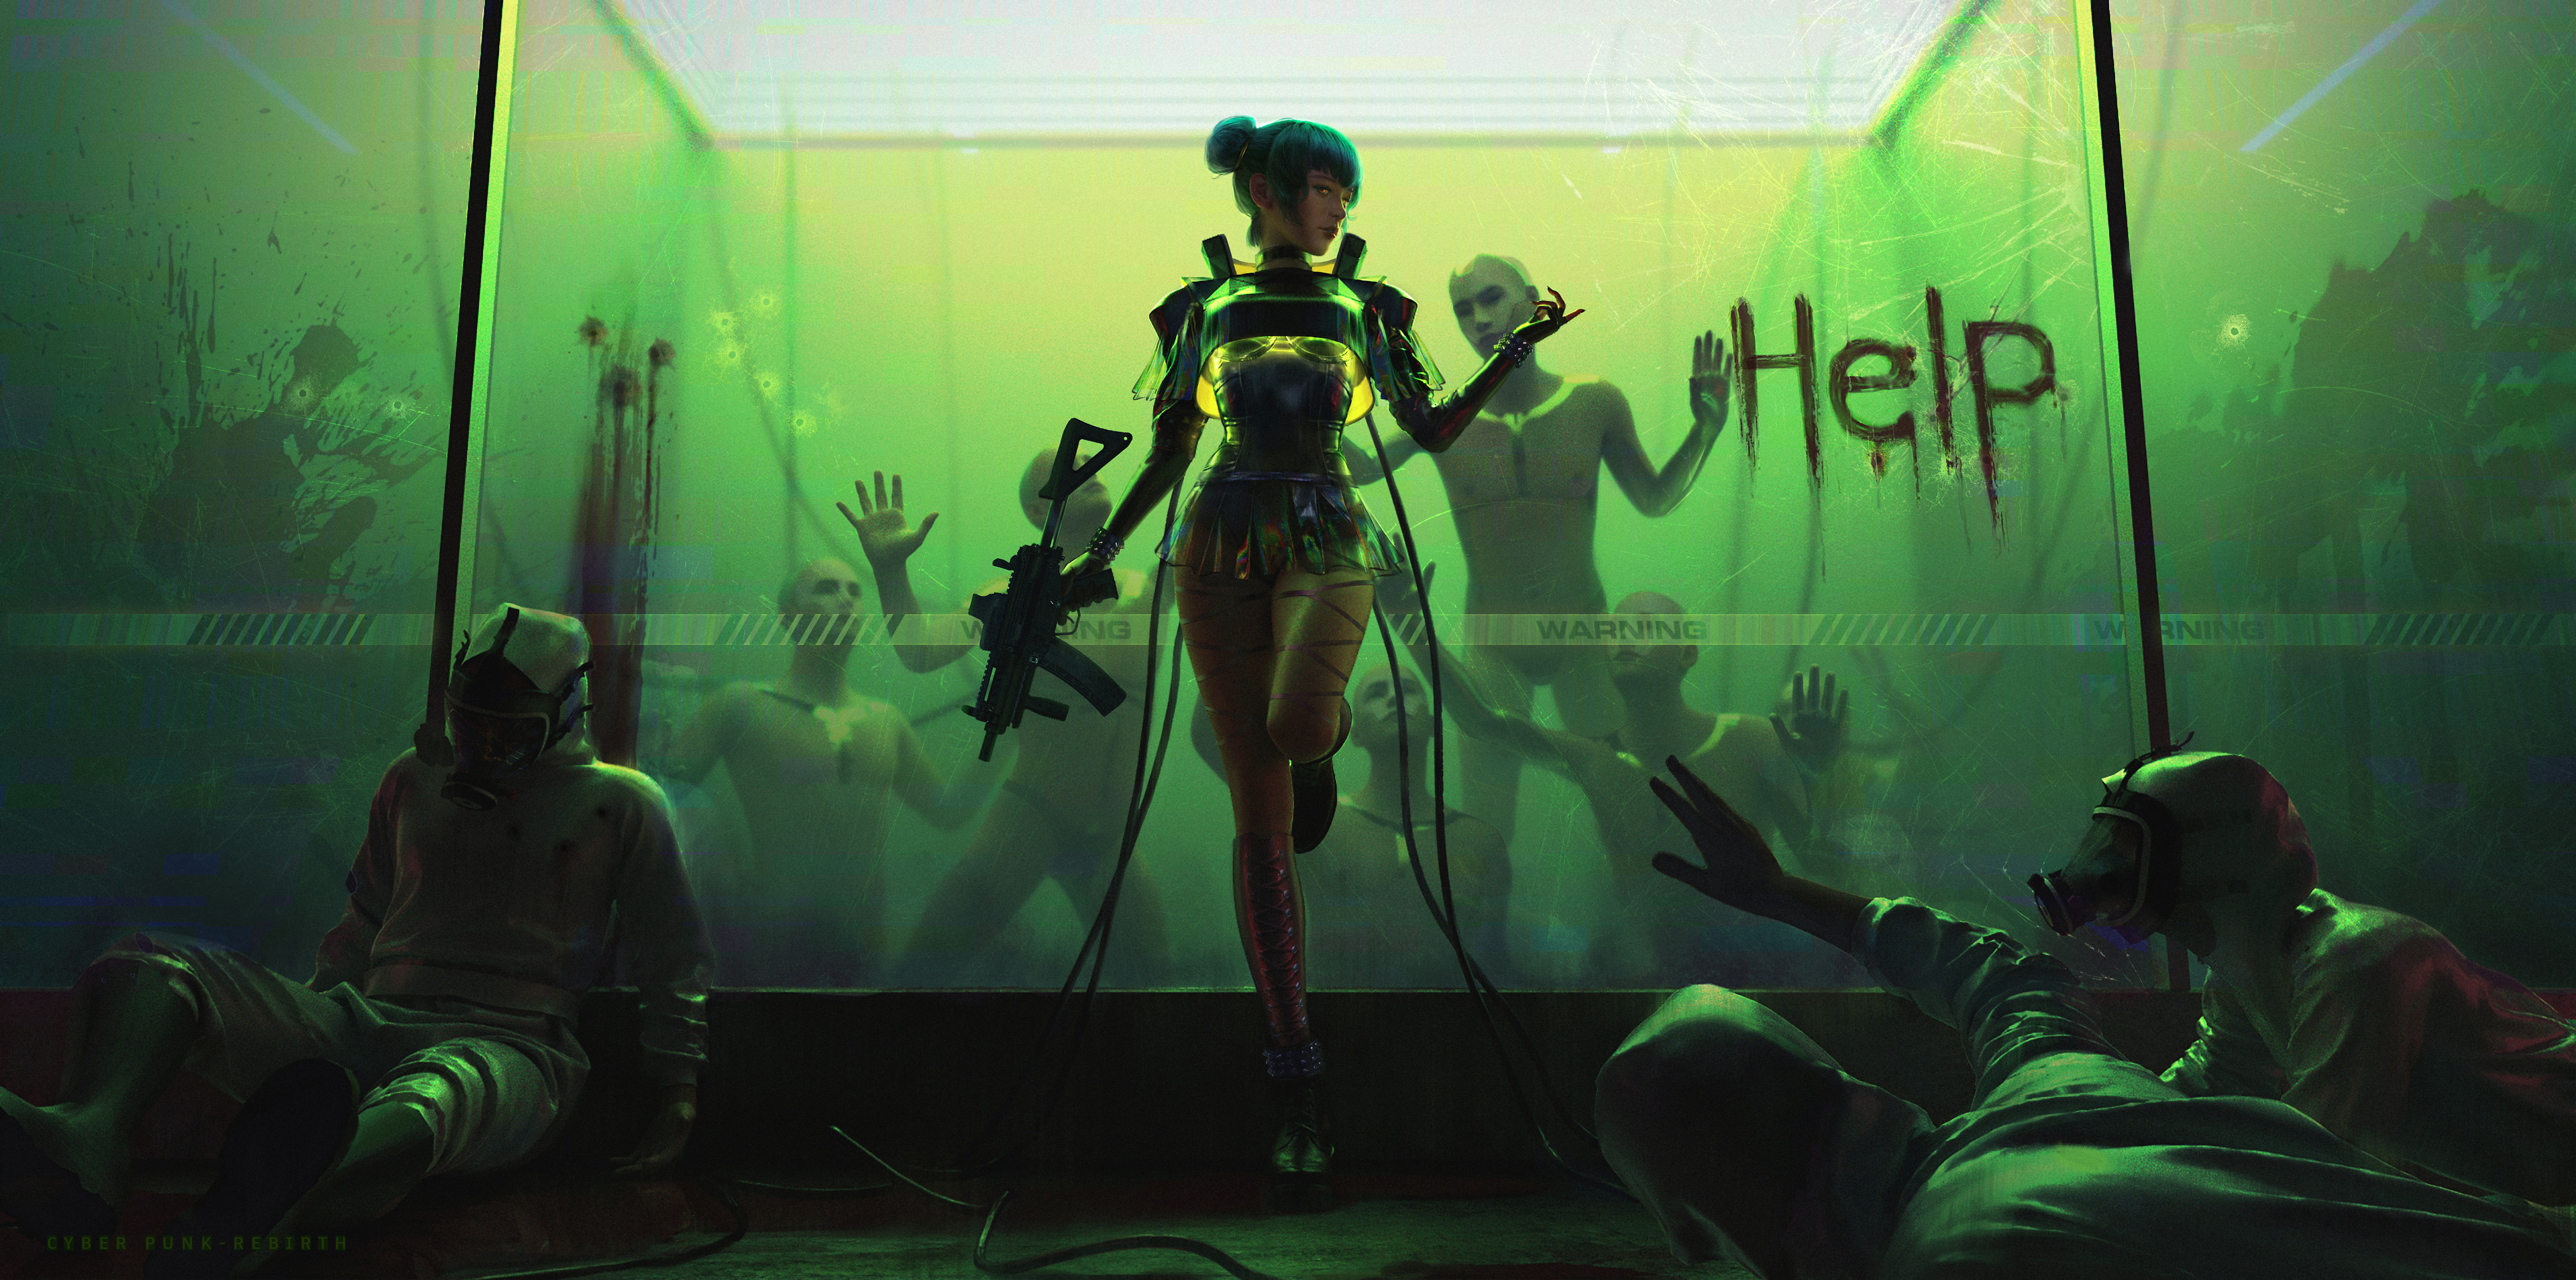 Sci Fi Cyberpunk HD Wallpaper by AIHONG HUANG